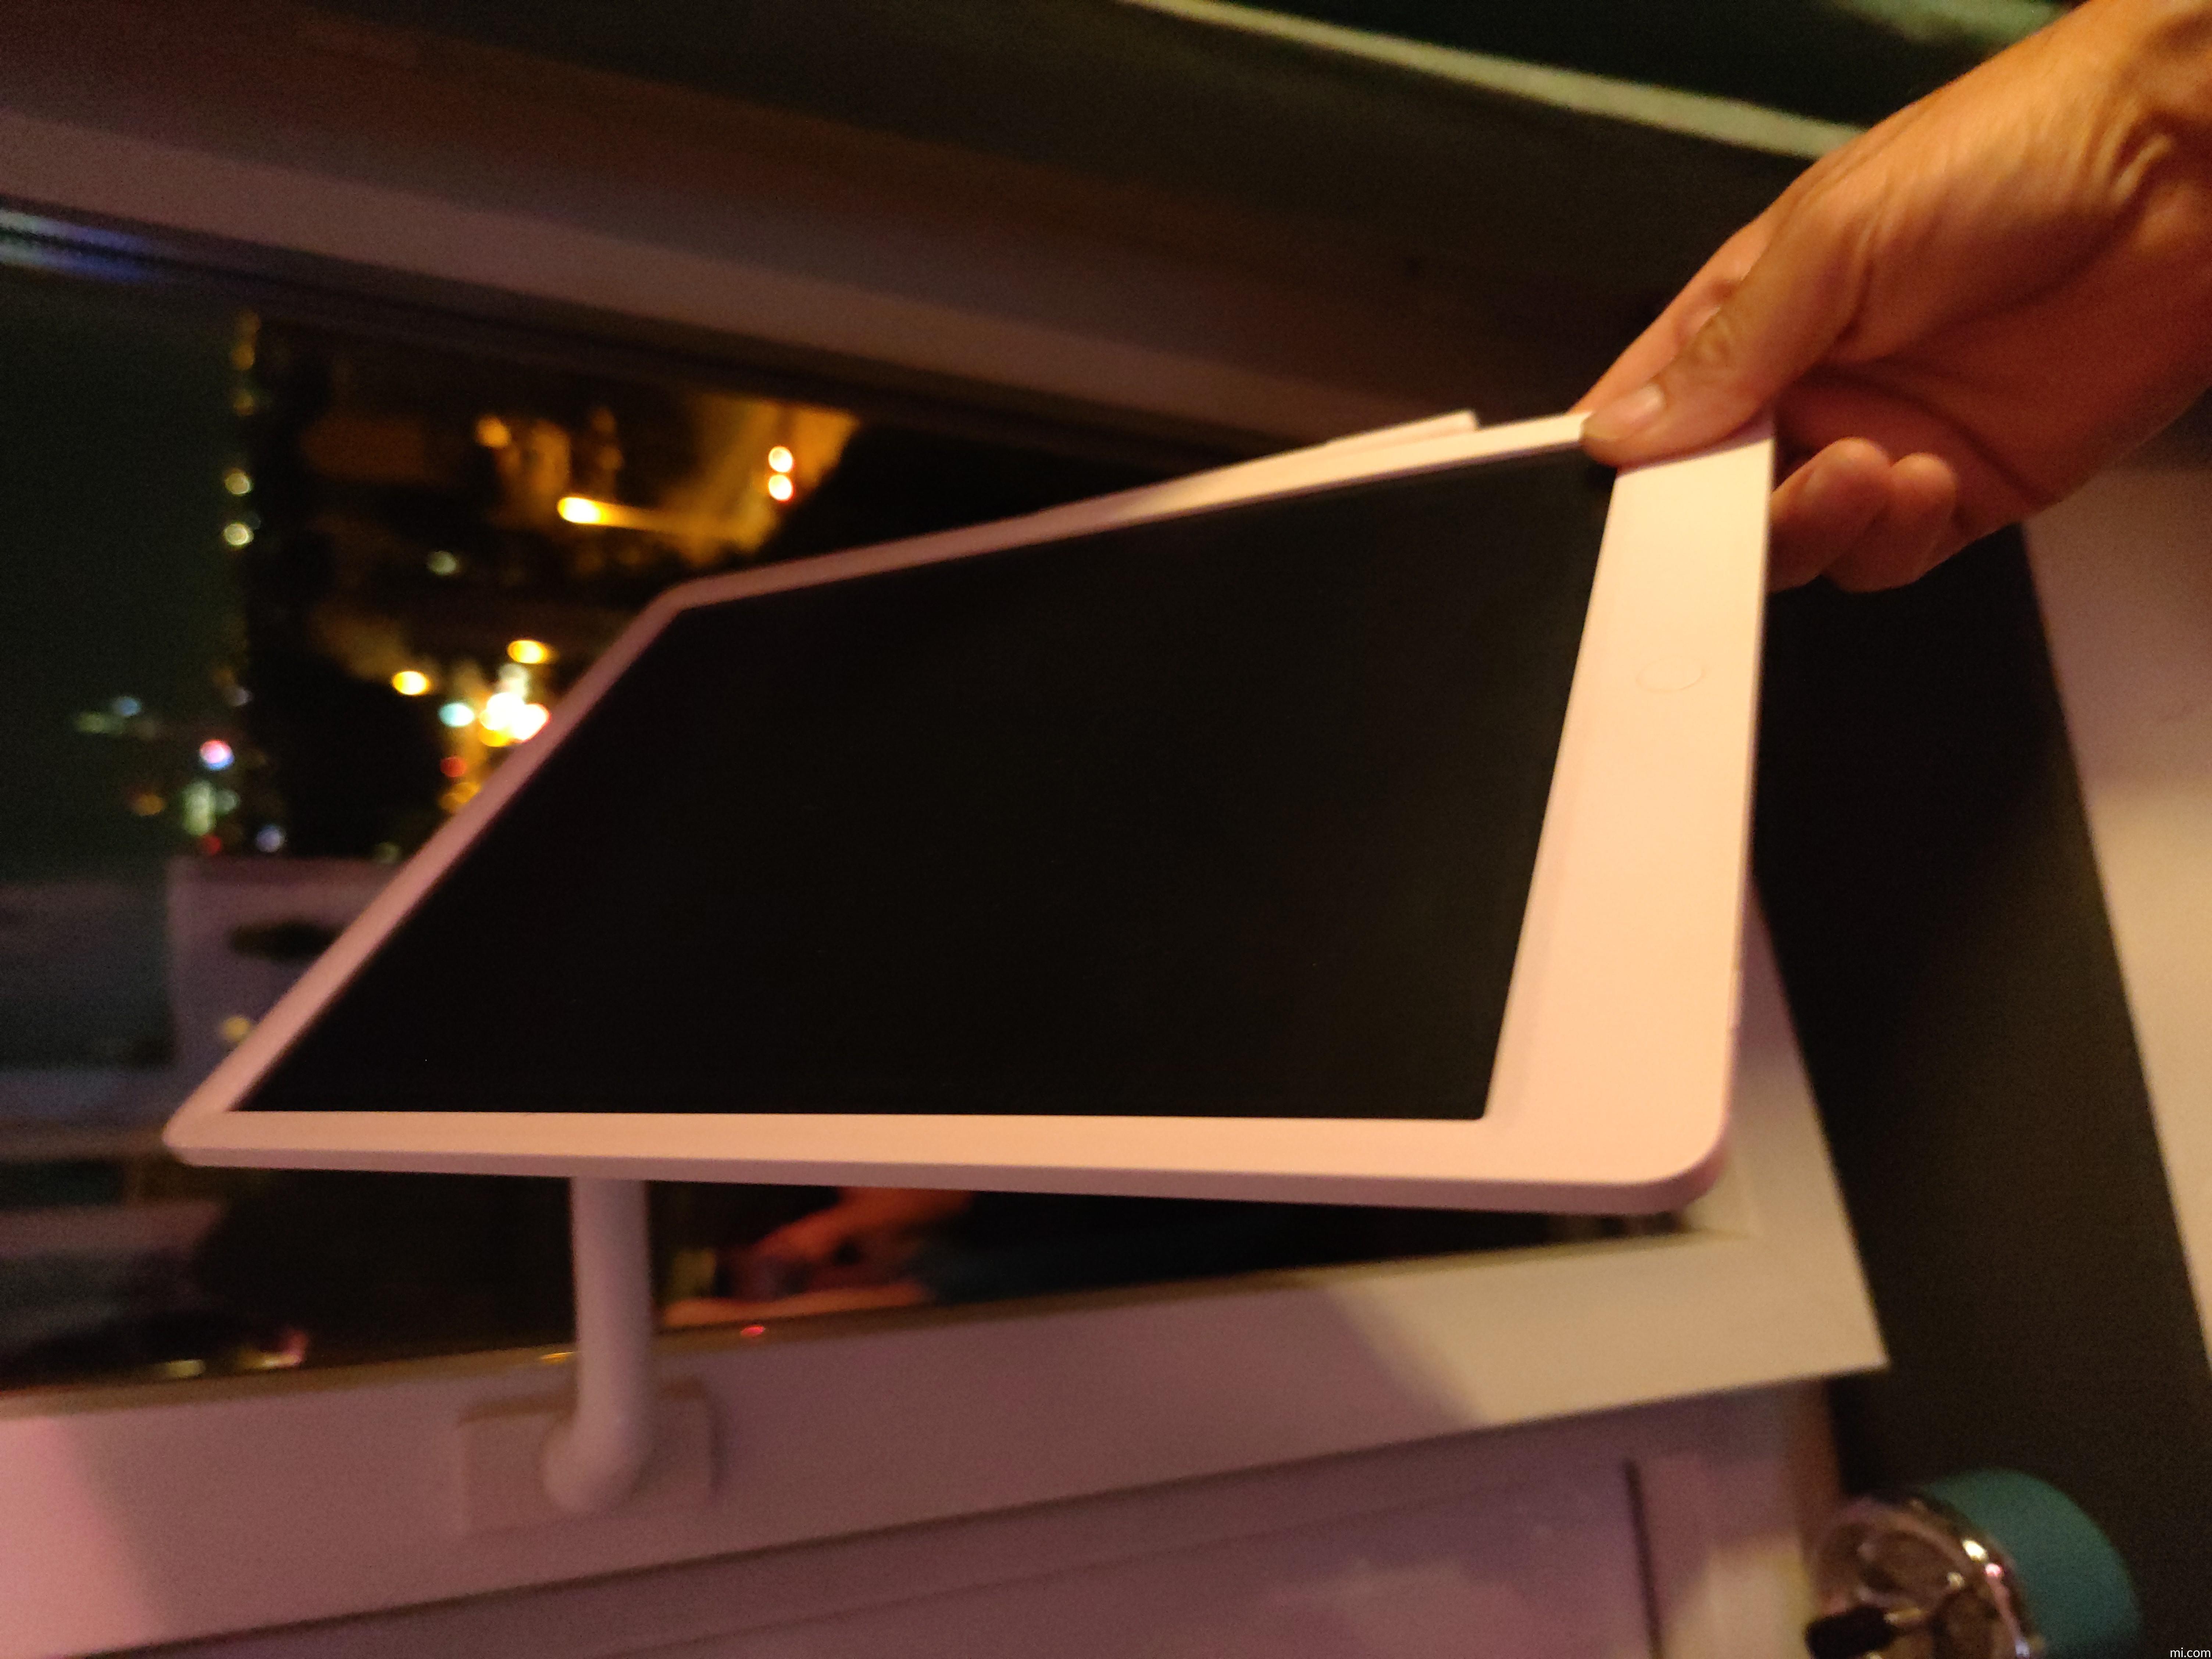 Xiaomi Tablette d'écriture Mijia XMXHB02WC 13,5 avec stylet (Blanc) -  Tablettes Tactiles - Tablettes - Informatique